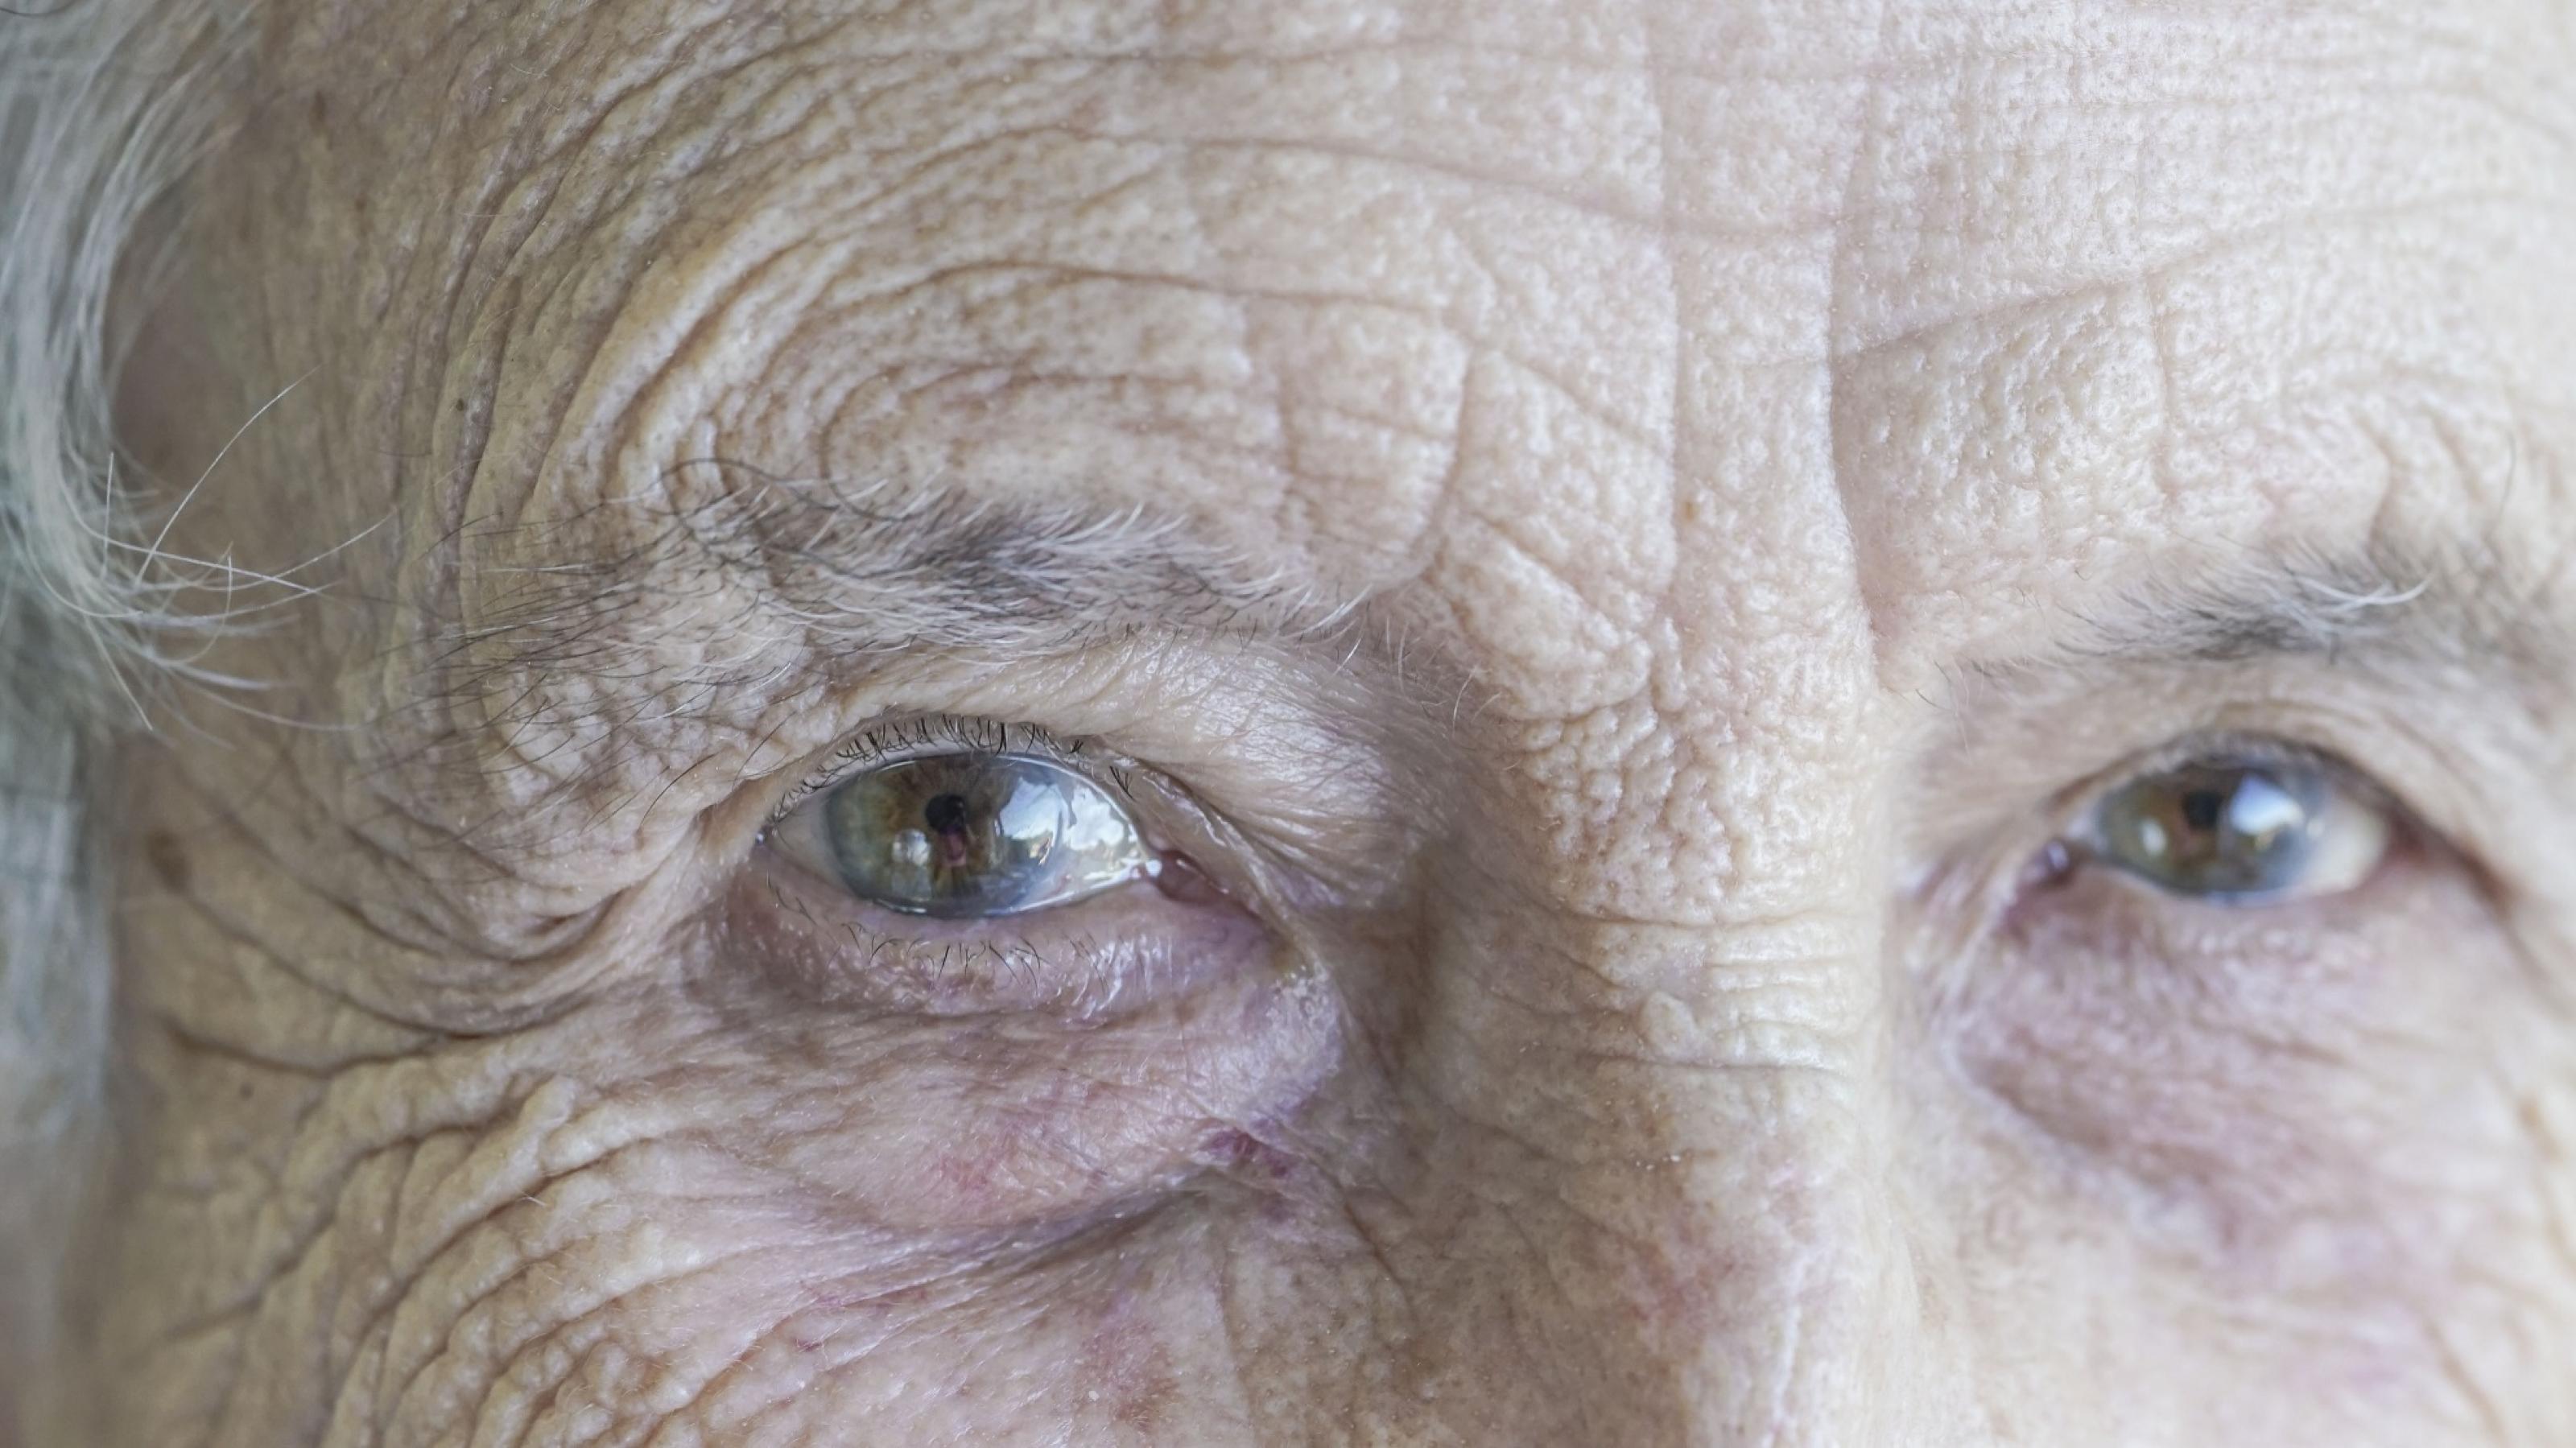 Eine Nahaufnahme zeigt die grau-braunen Augen einer alten Frau, die uns Betrachter direkt anschaut.